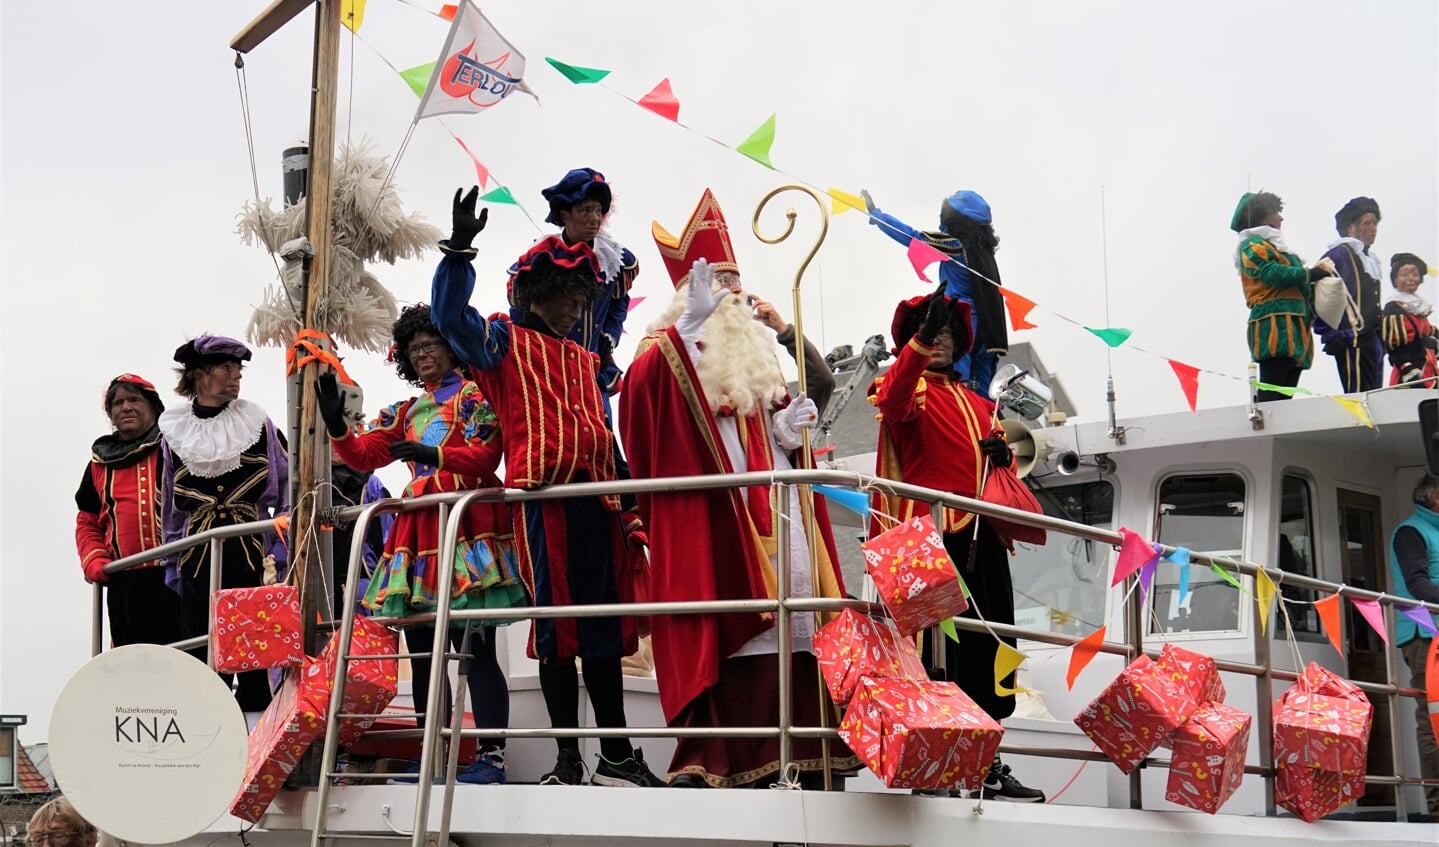 De aankomst van de pakjesboot in 2021, met Sinterklaas en zijn helpers op de voorplecht. | Archieffoto: C. v.d. Laan